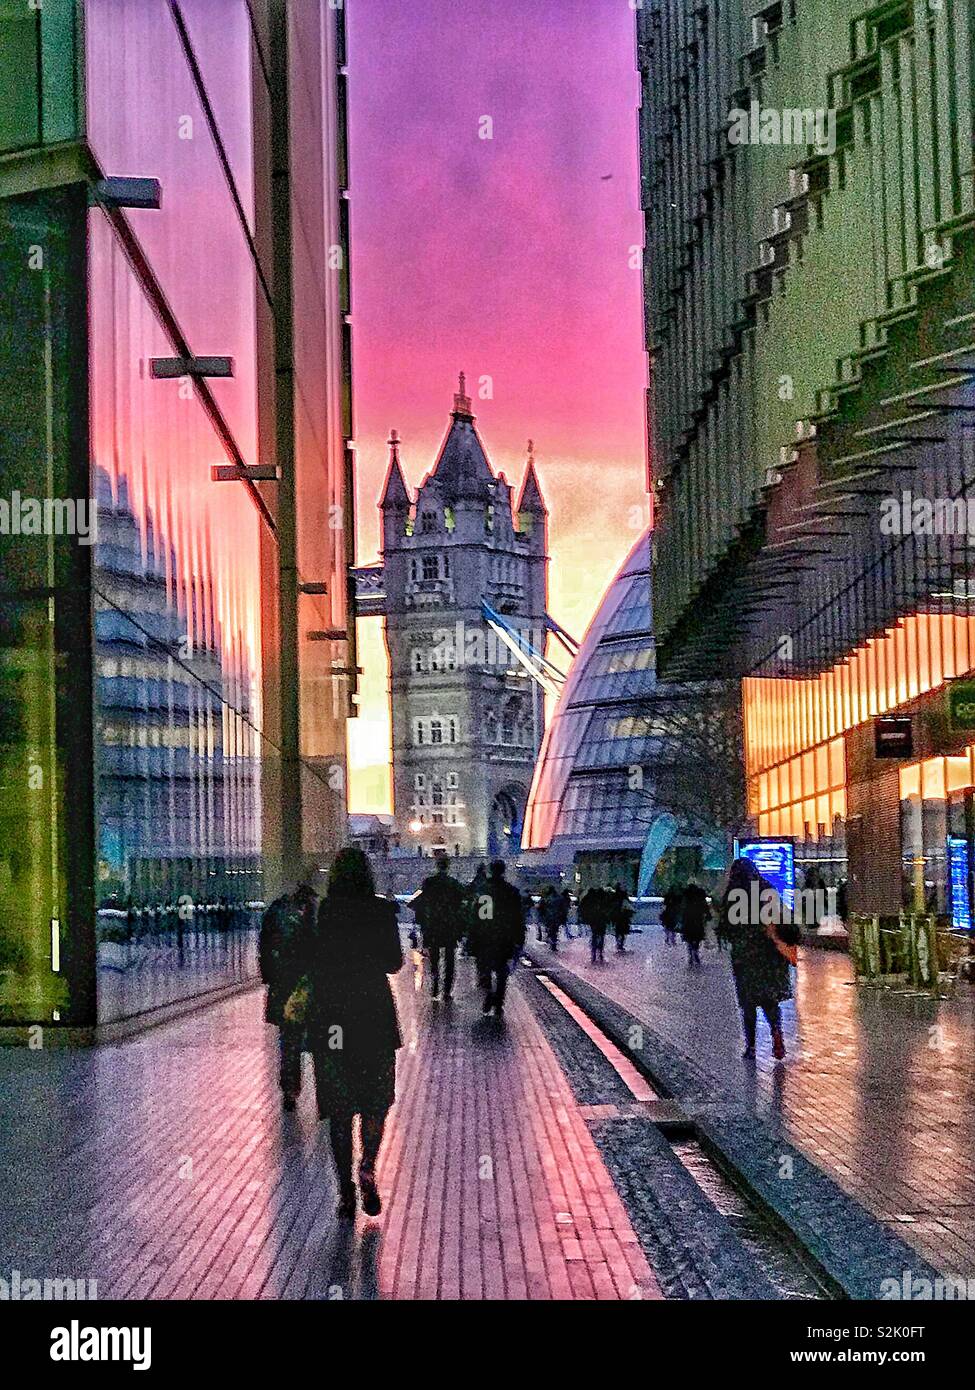 Plus de Tower Bridge London Riverside, à l'aube. Janvier 2018. Banque D'Images